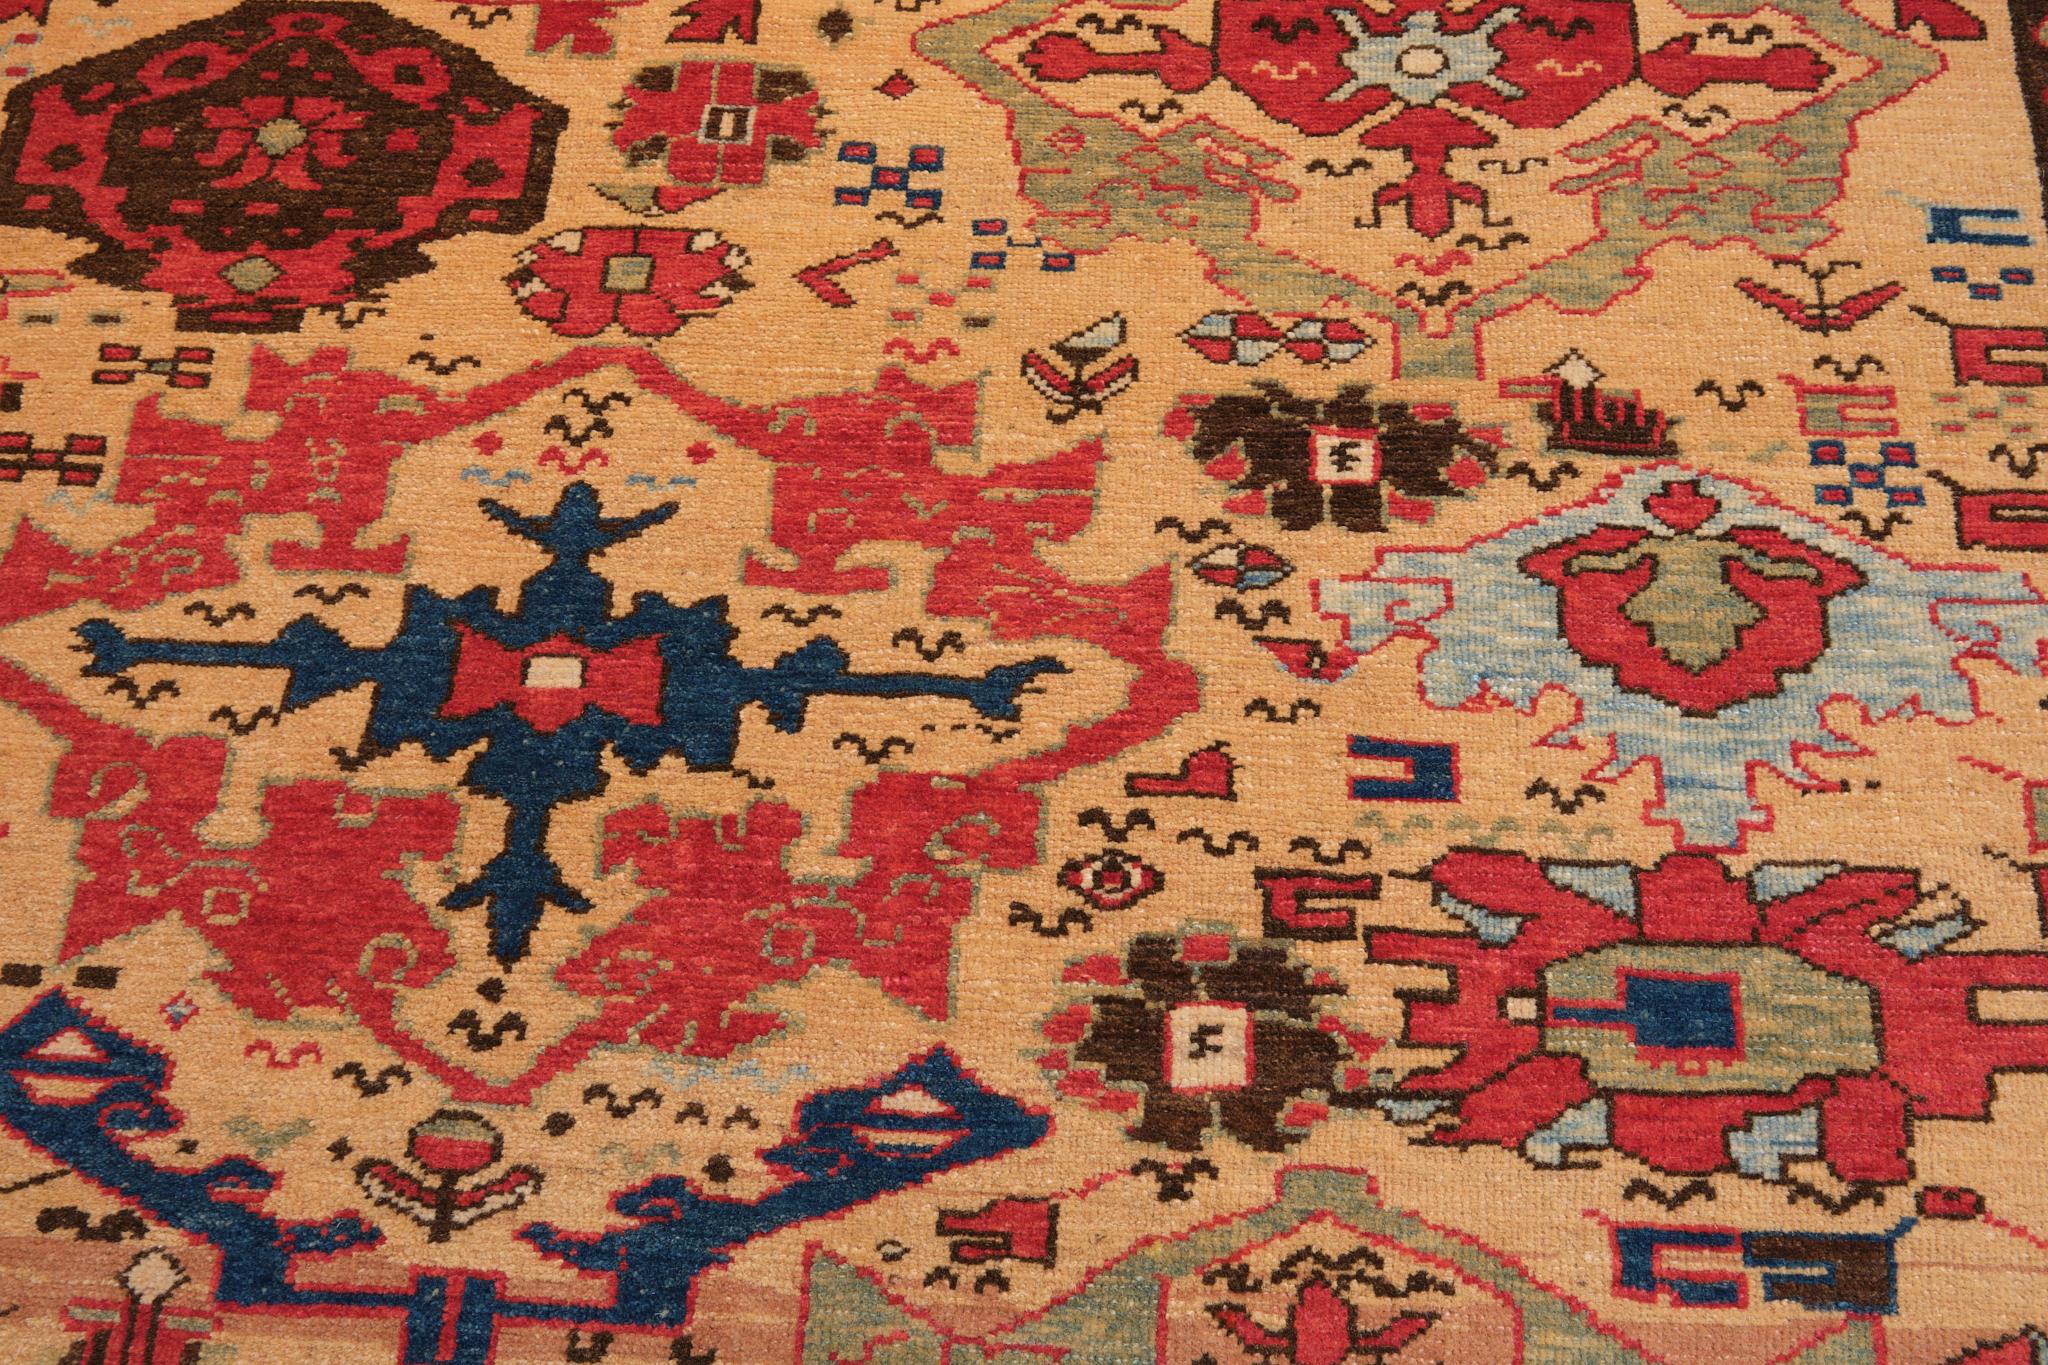 Contemporary Ararat Rugs Azerbaijan Harshang Desing Carpet Caucasian Revival Rug Natural Dyed For Sale